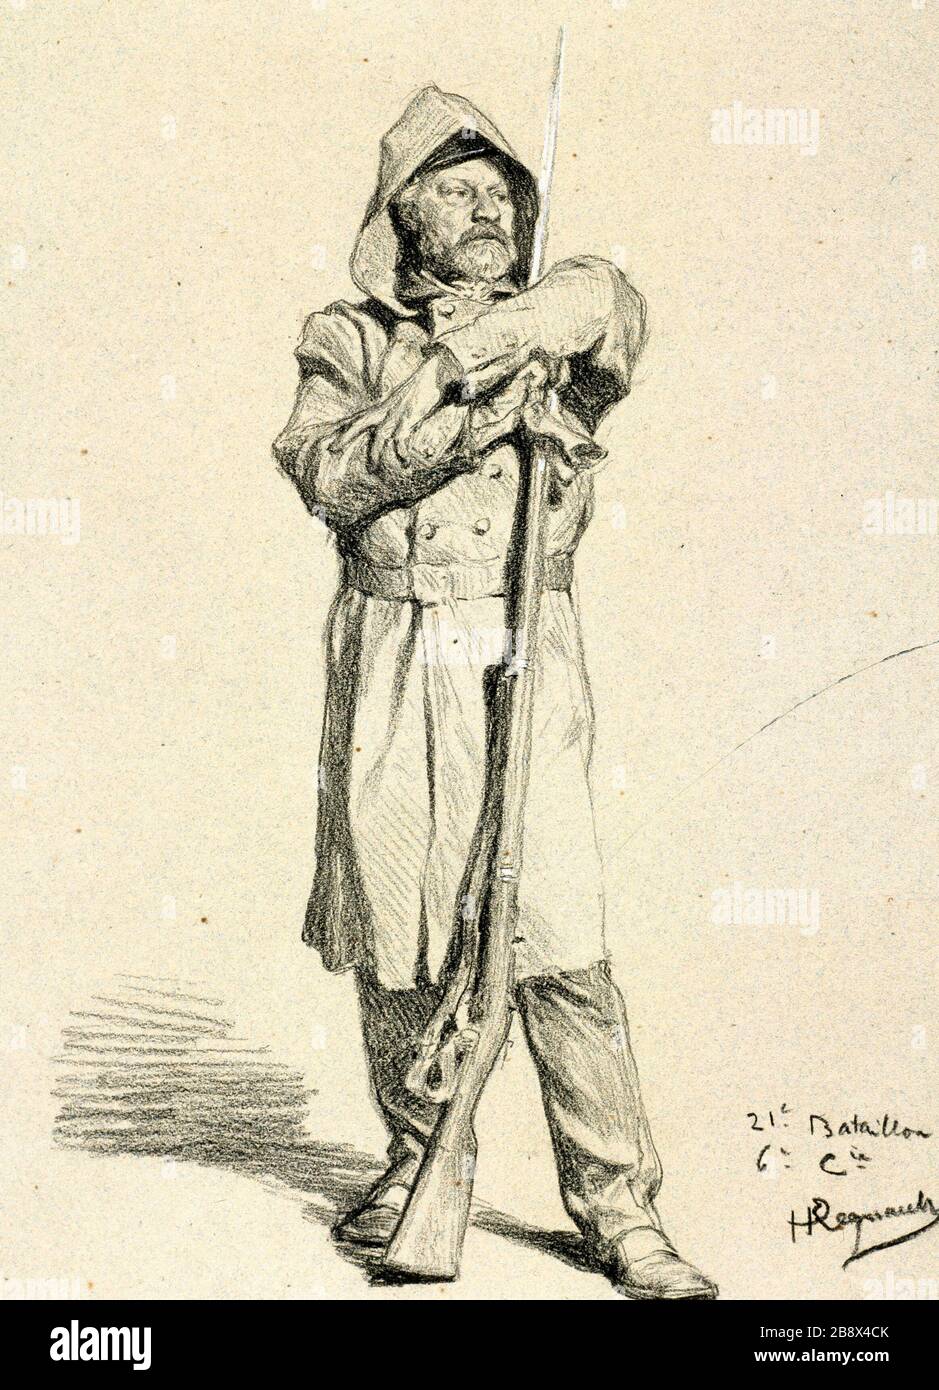 21ST BATTALION - 6TH COMPANY - ALEXANDRE BIDA Henri Regnault (1843-1871). 21ème bataillon - 6ème compagnie : Alexandre Bida. Paris, musée Carnavalet. Stock Photo